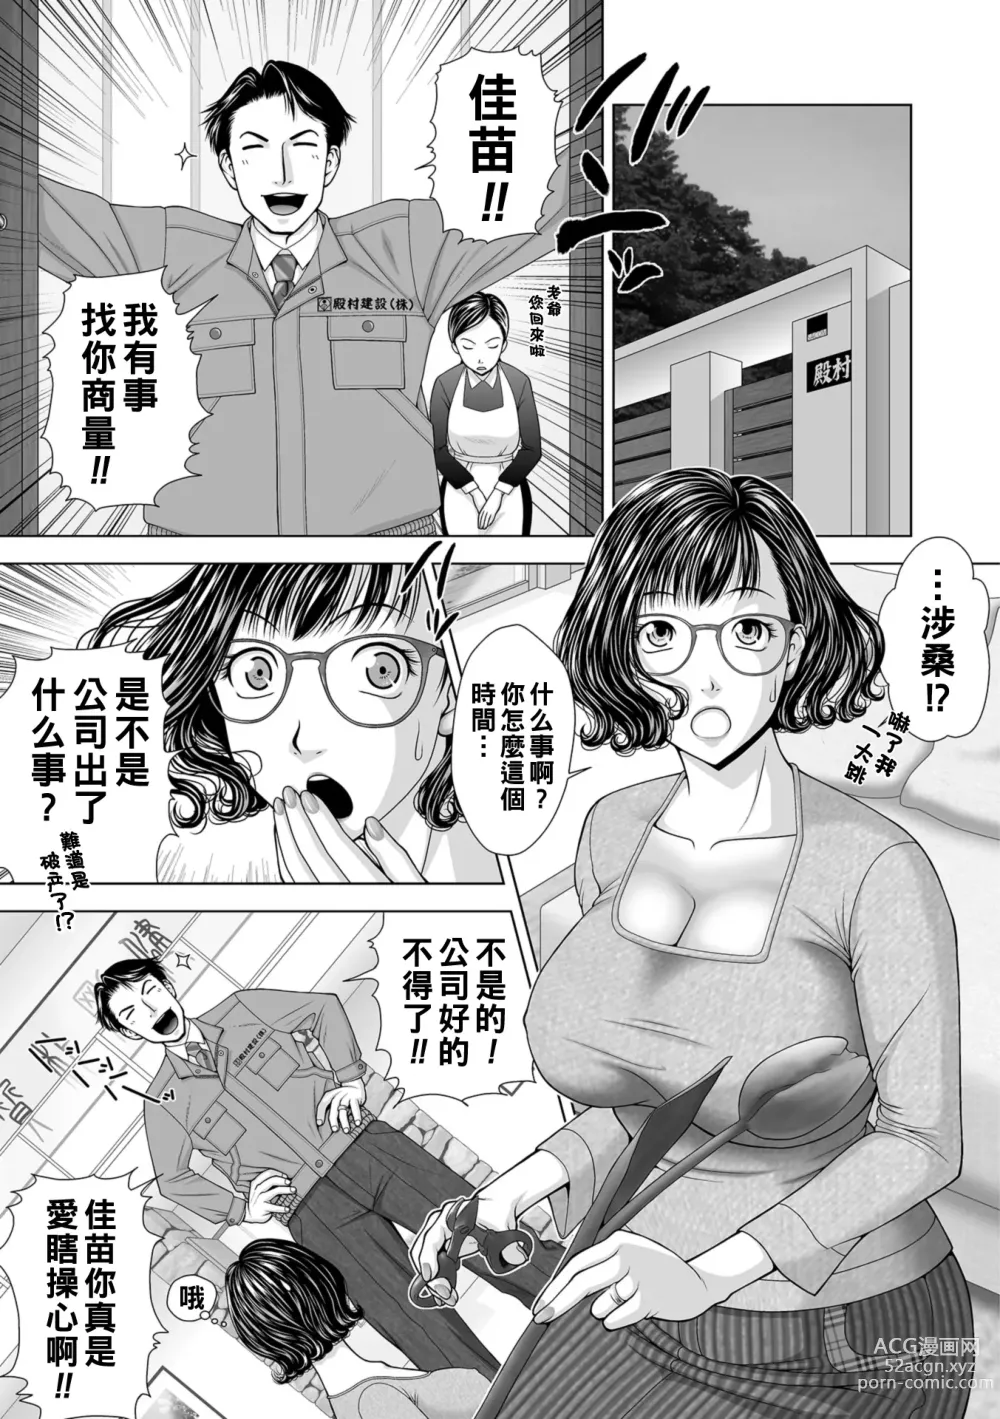 Page 1 of manga Ageman-Sama.